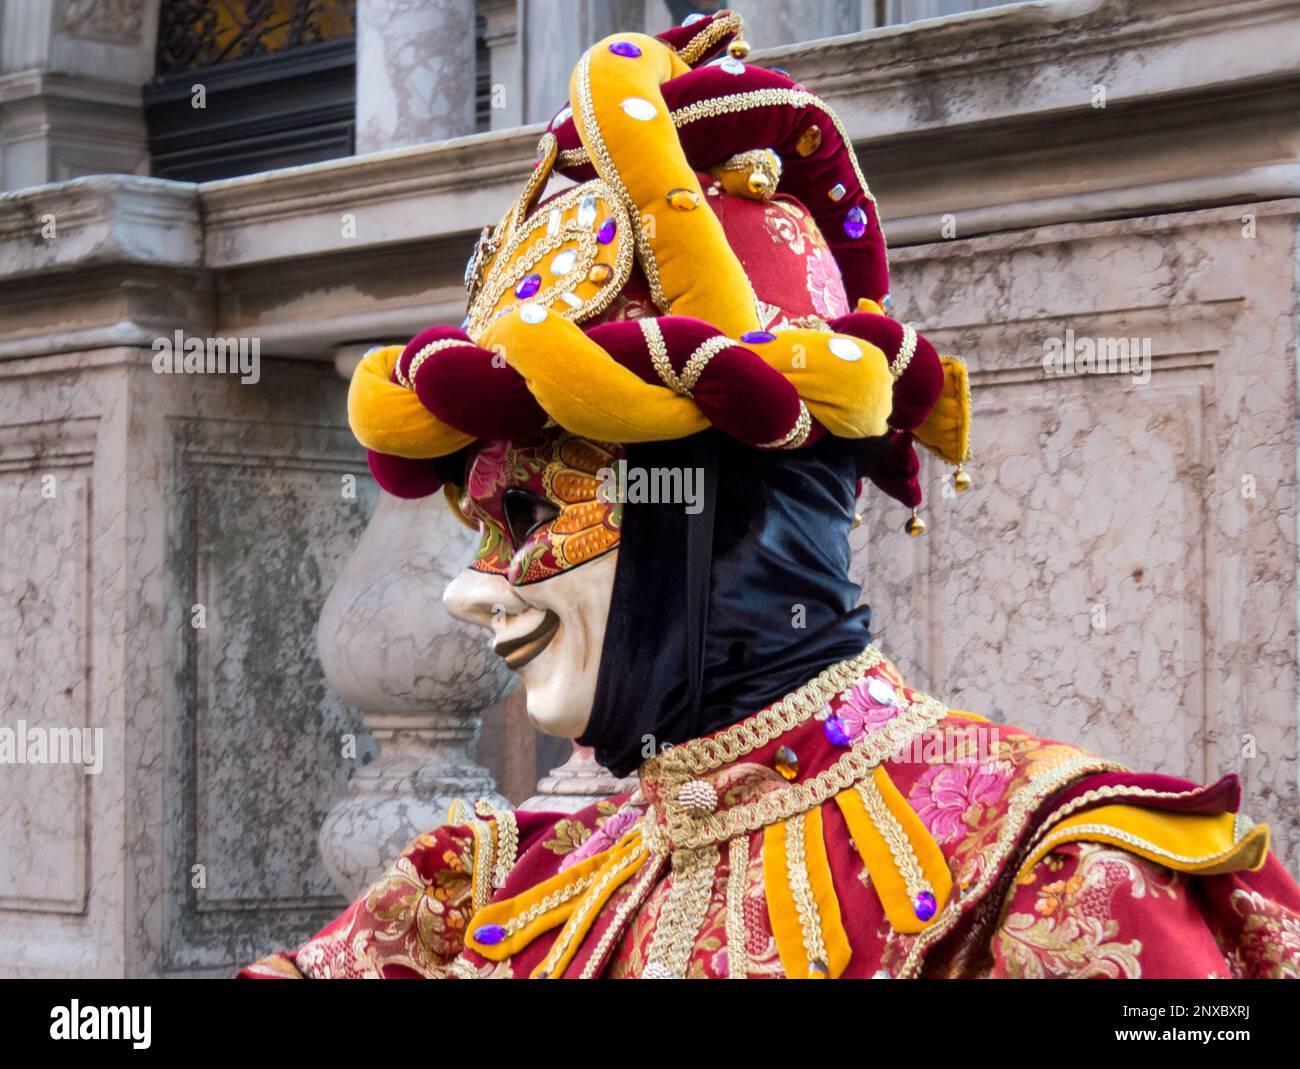 Carnaval de Venecia. Es un carnaval diferente al resto del mundo, la gente se disfraza y sale a la calle a caminar y tomarse fotos. Italie Banque D'Images